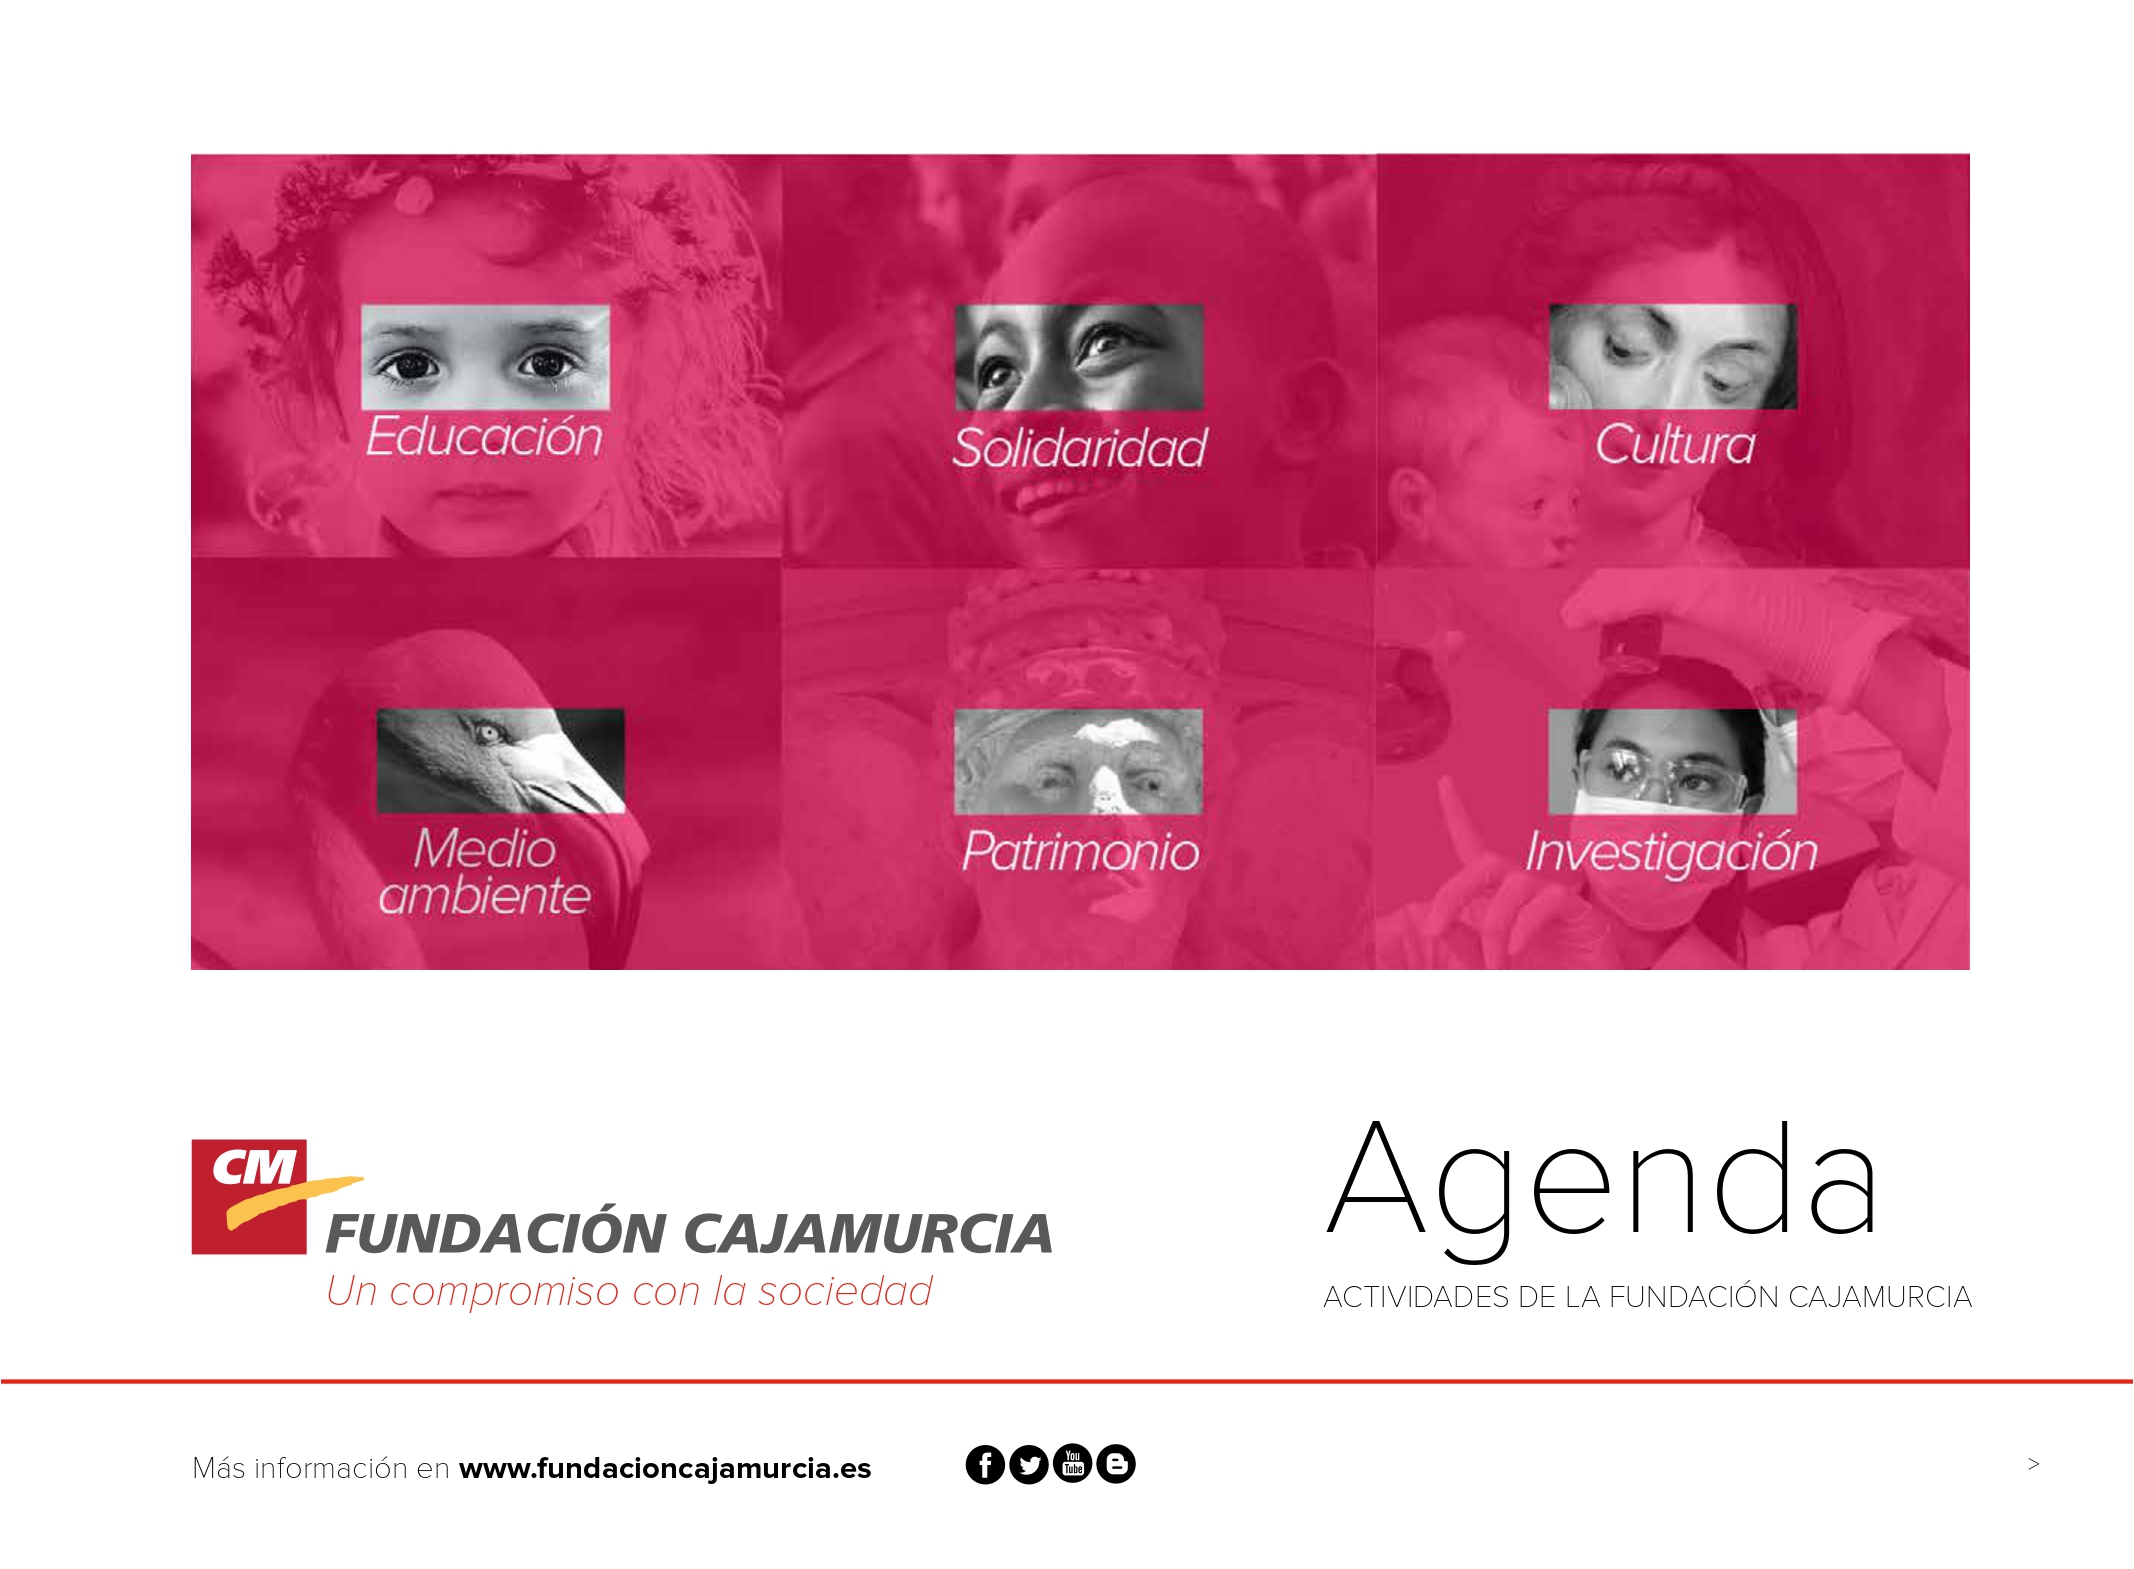 FUNDACIONCAJAMURCIA-agenda_pages-to-jpg-0001.jpg